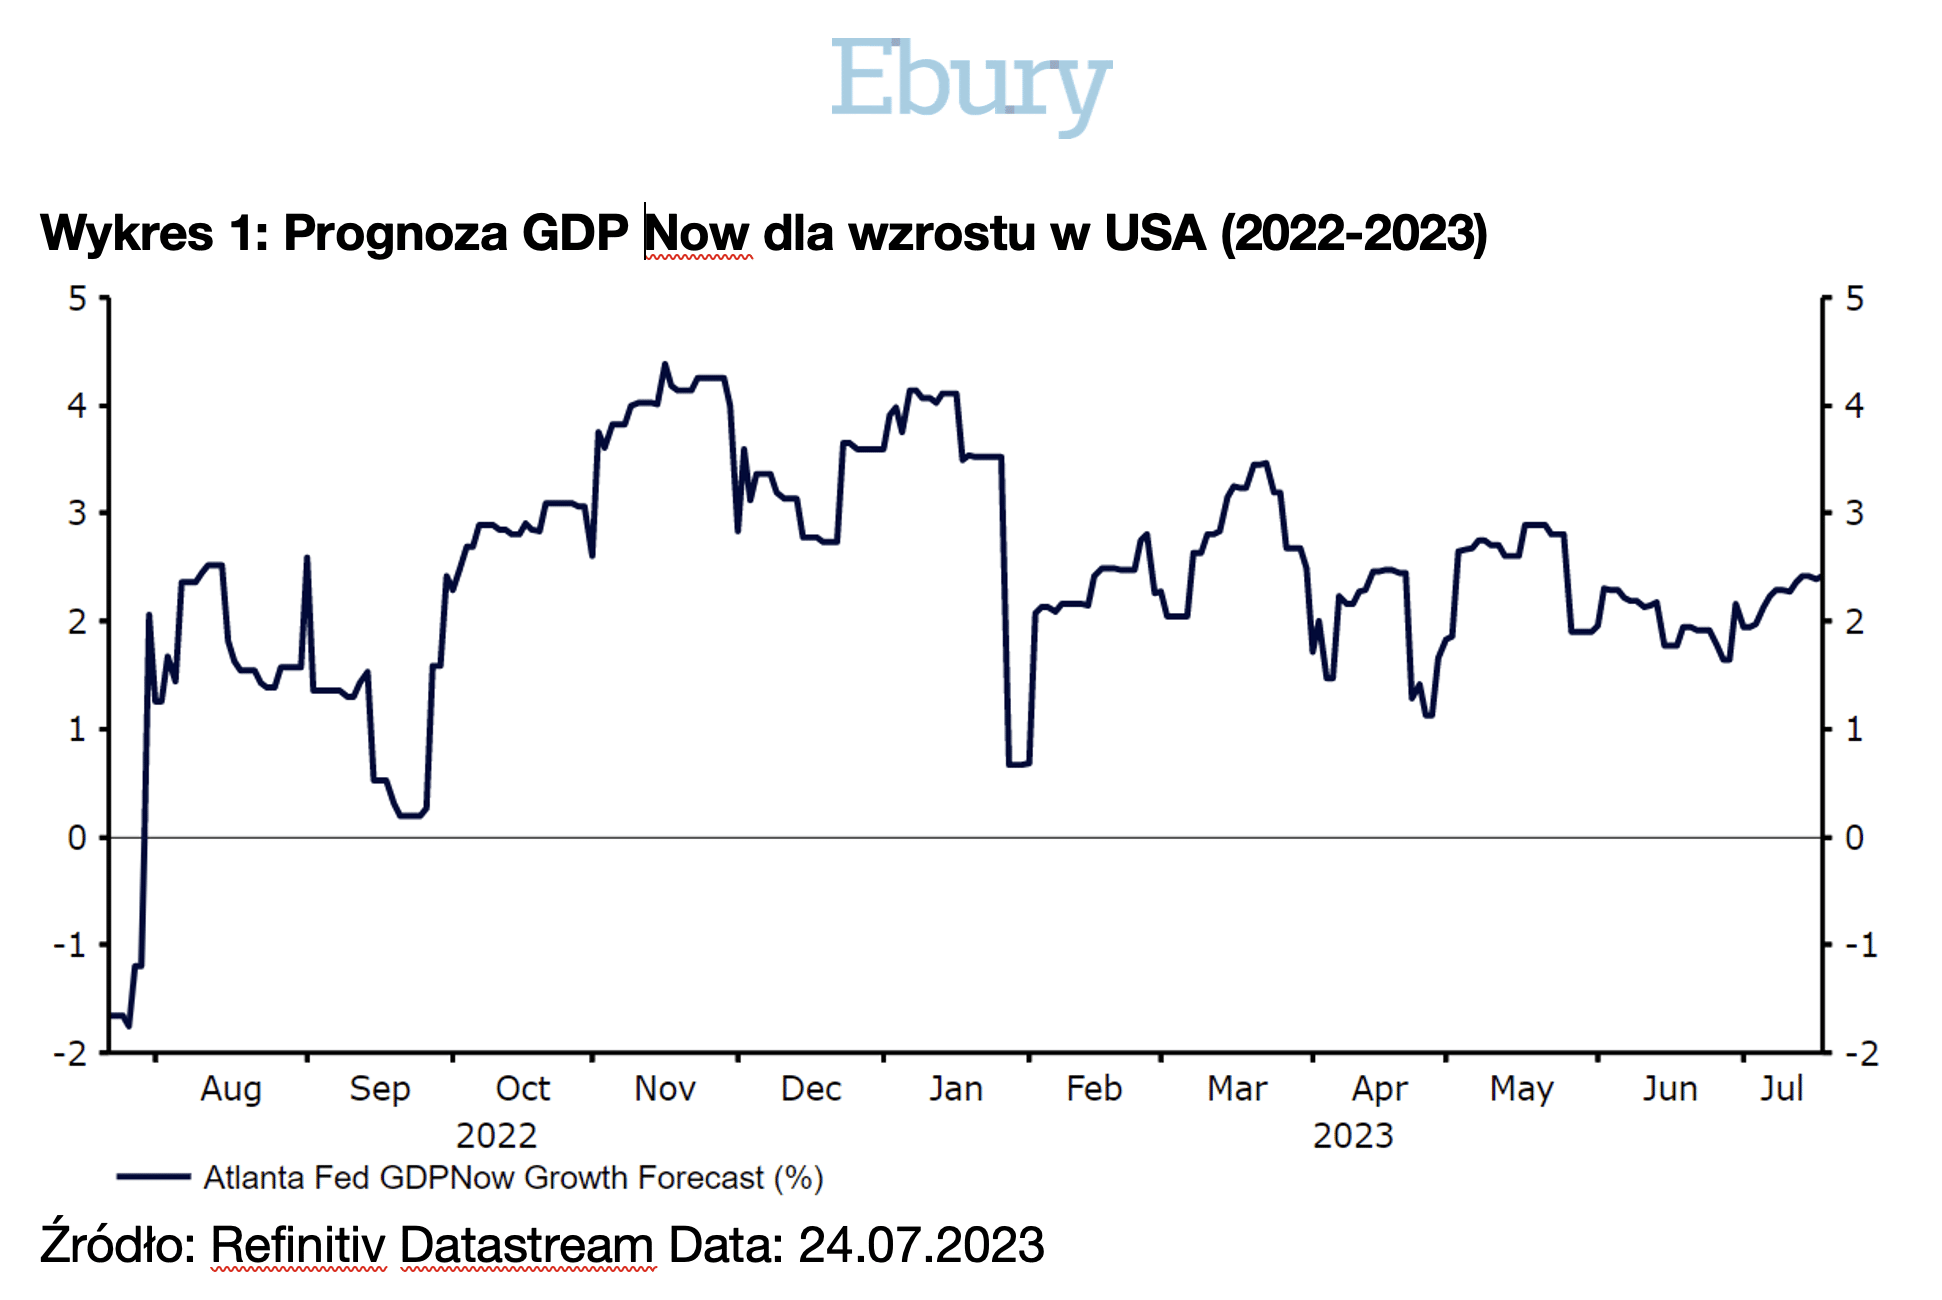 Prognoza GDP Now dla wzrostu gospodarczego w USA (2022-2023)